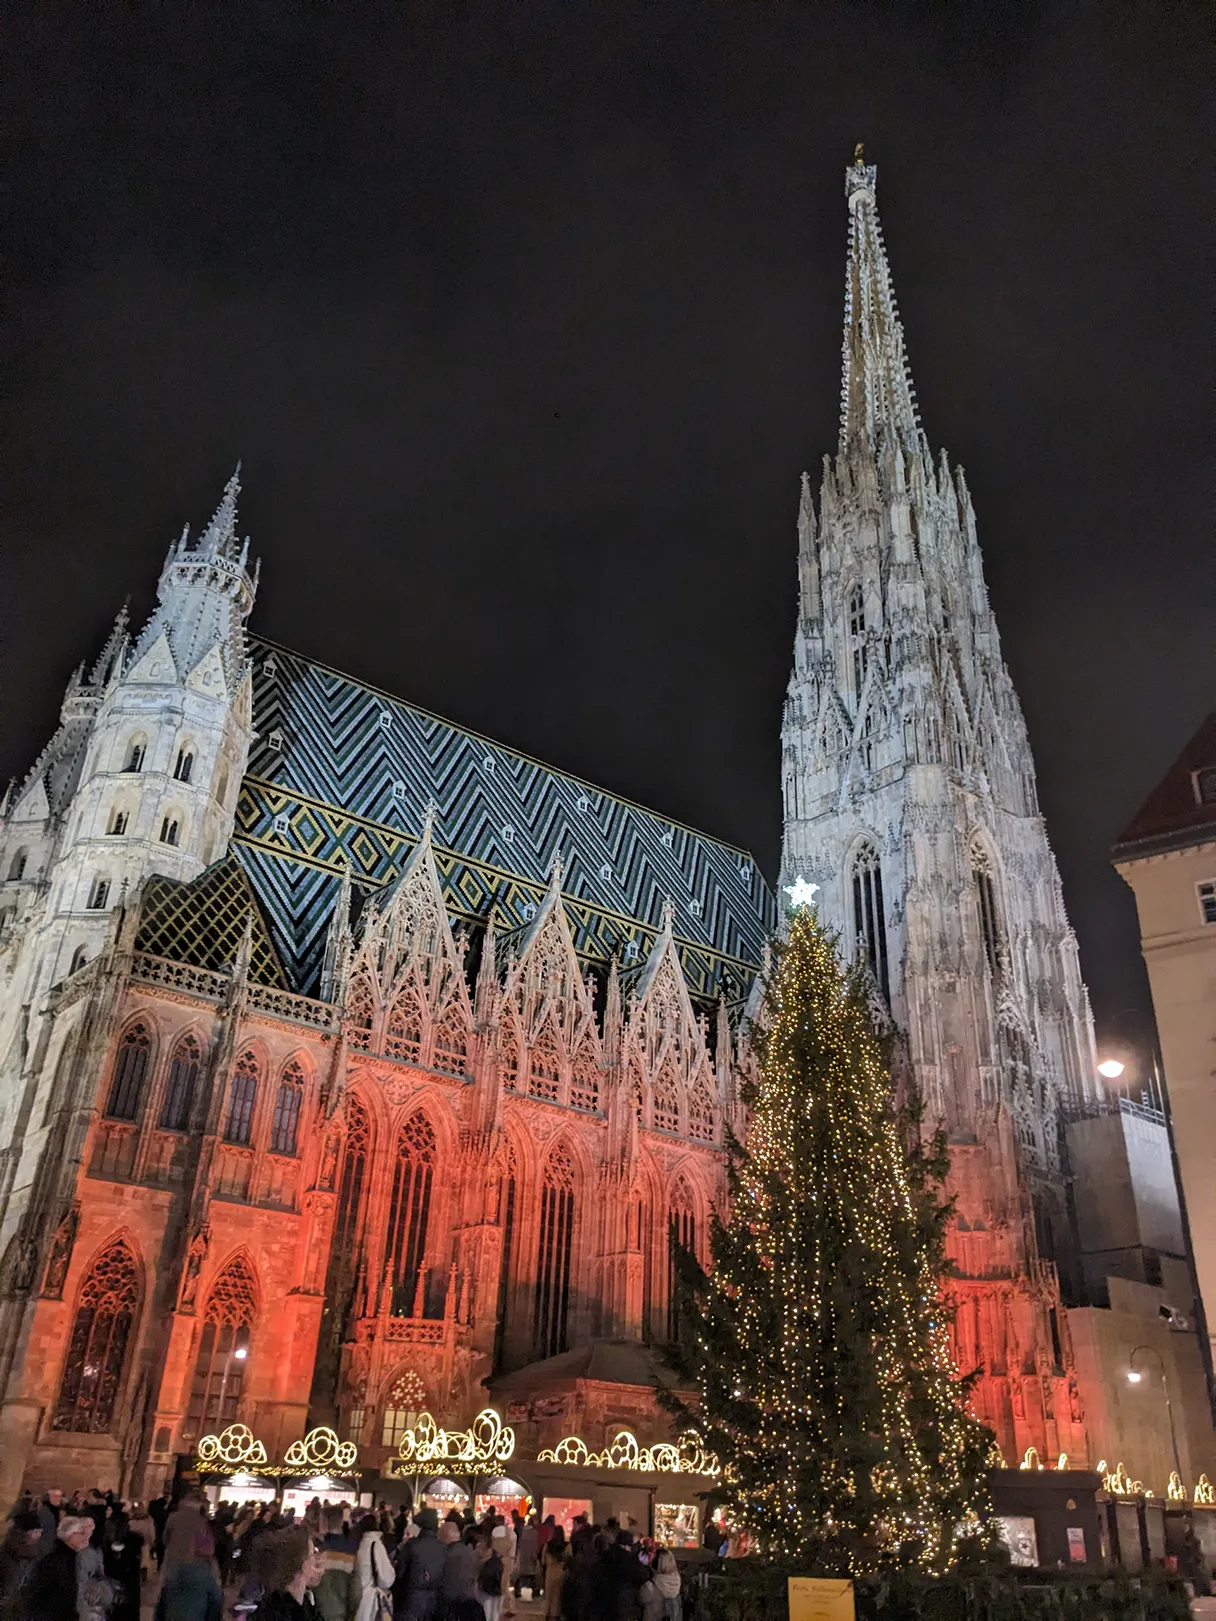 Stephansdom, angeleuchtet, Weihnachtsbaum steht vor dem Stephansdom, umgeben von Handwerksständen